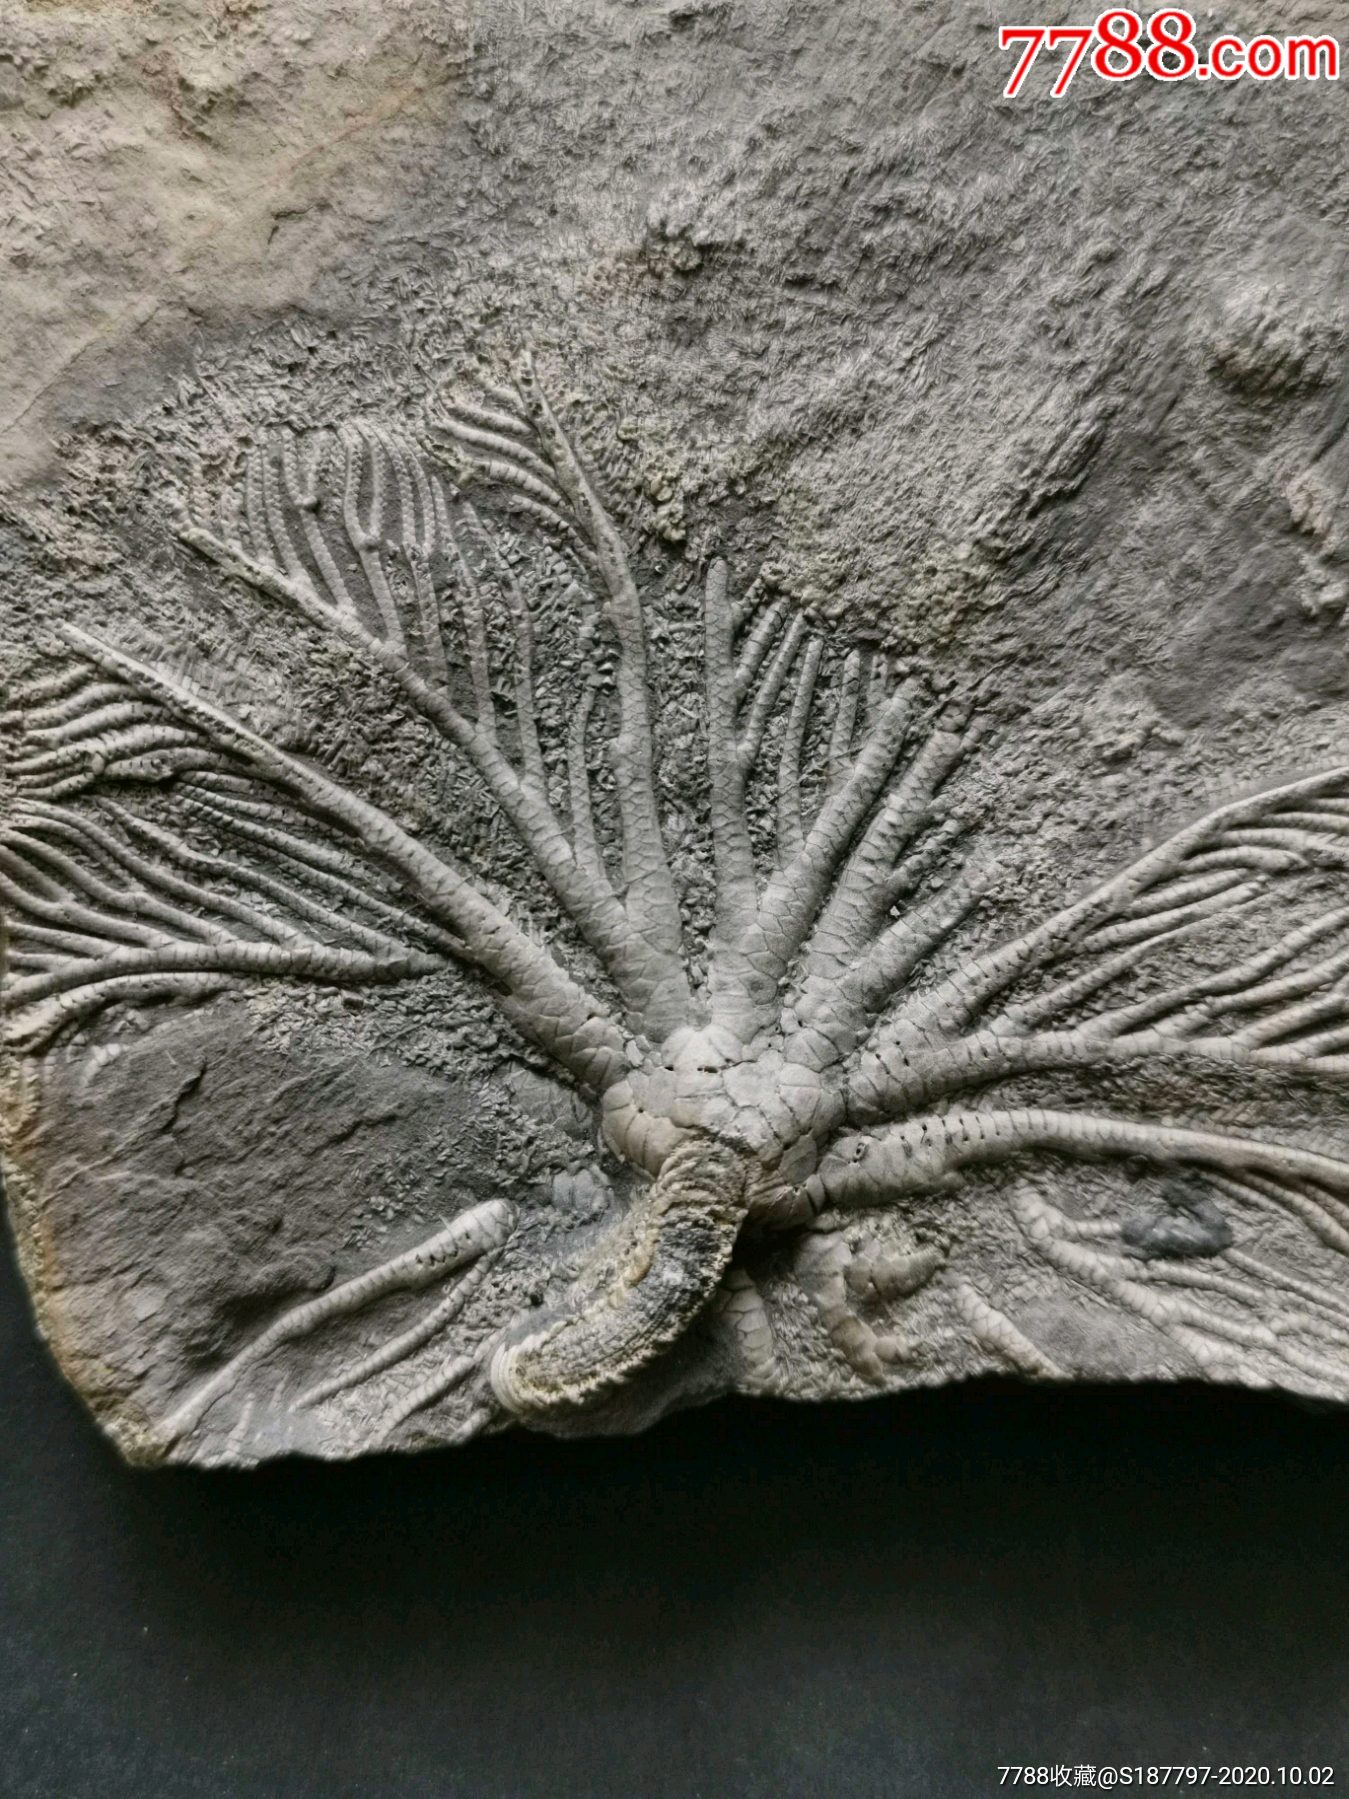 ゆんフリー写真素材集 : No. 9978 植物の化石 [日本 / 東京]